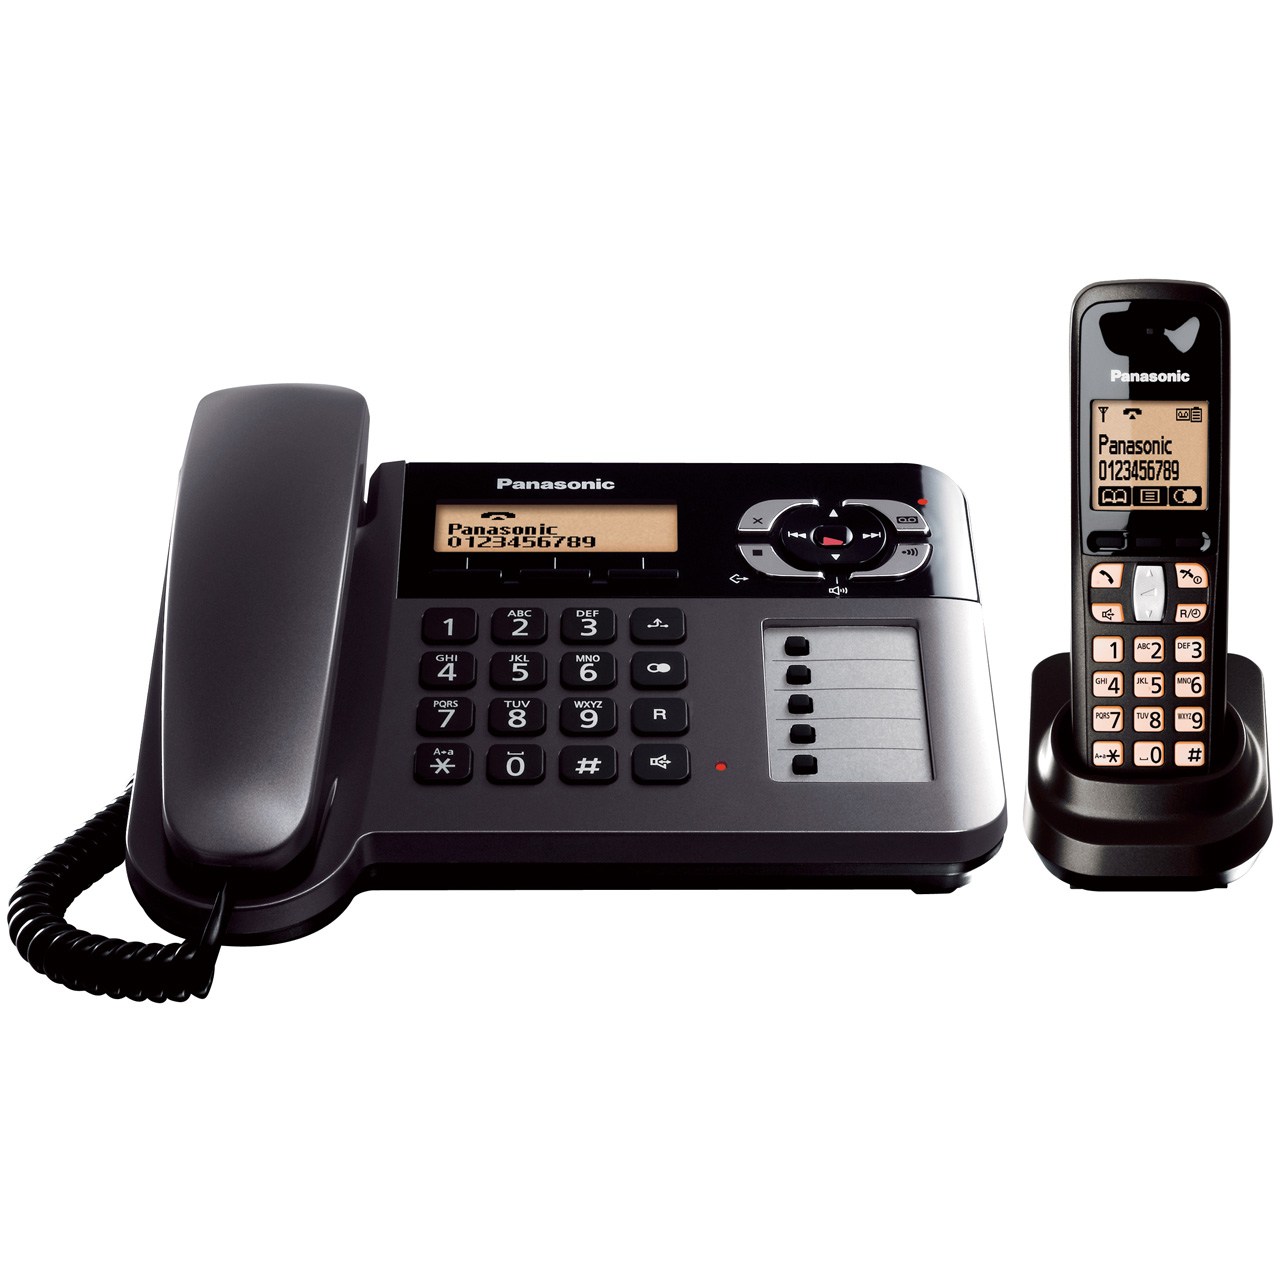 نکته خرید - قیمت روز تلفن بی سیم پاناسونیک مدل KX-TG6461 خرید